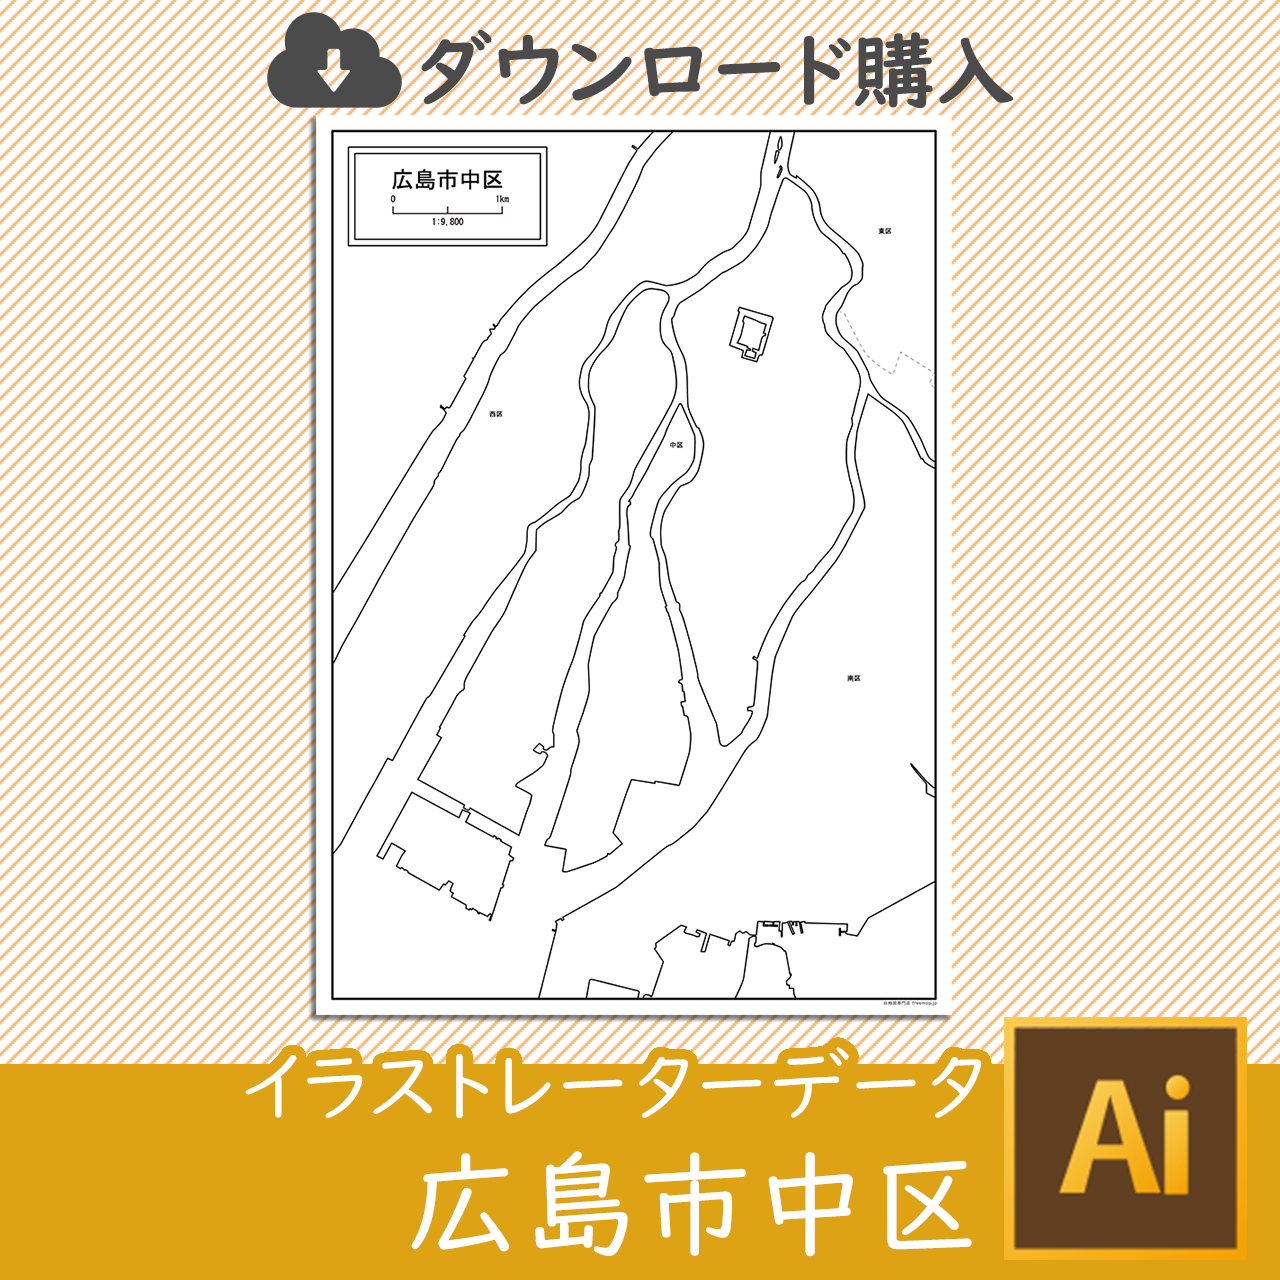 広島市中区のaiデータのサムネイル画像